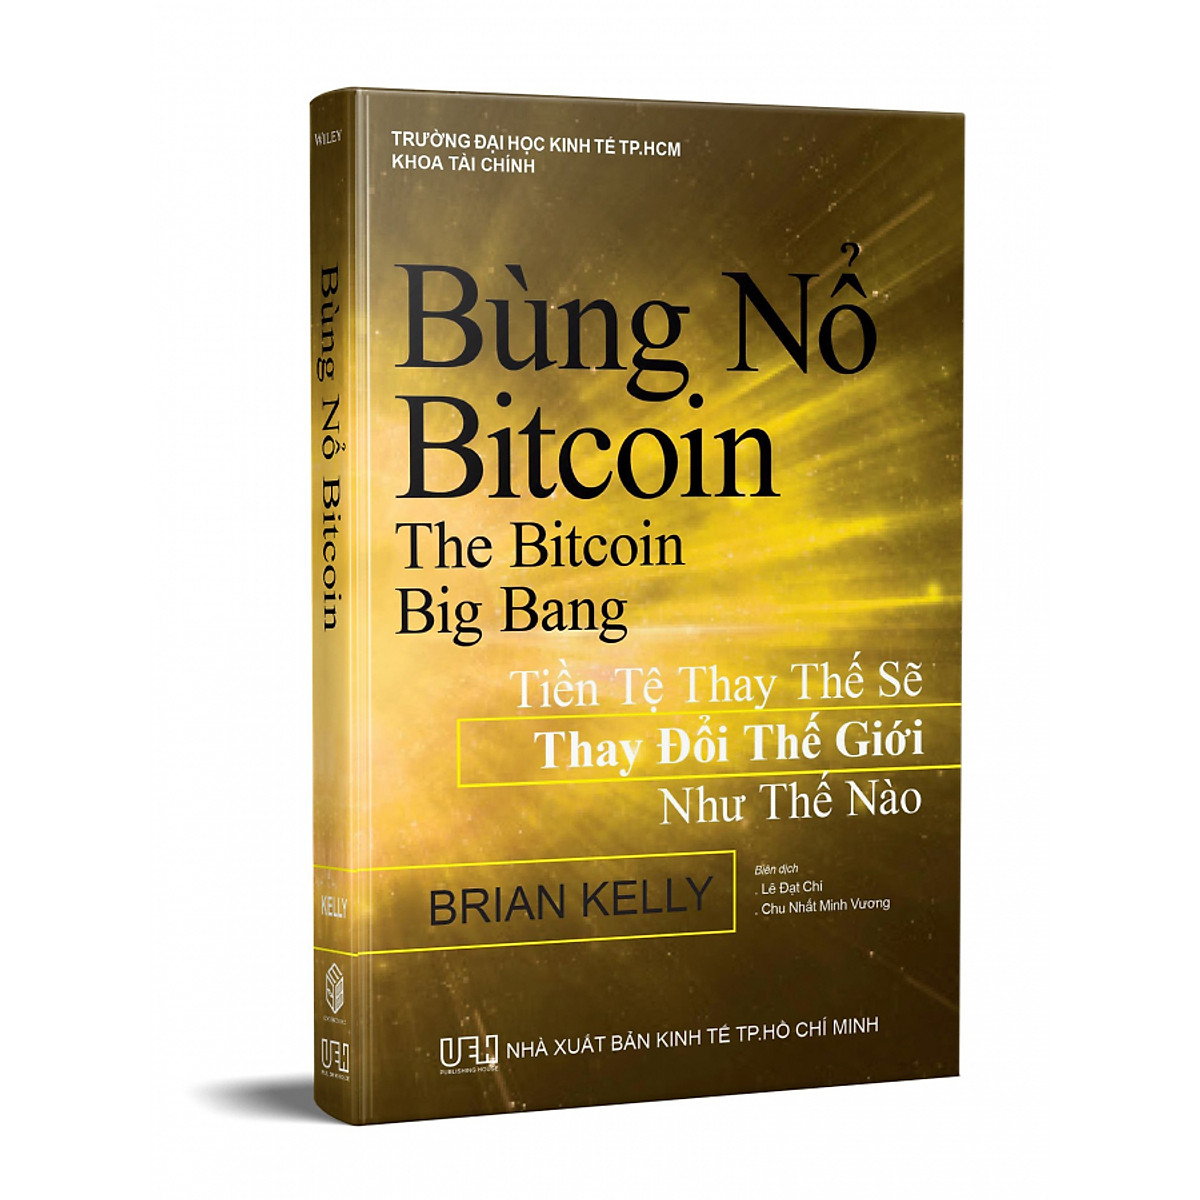 Bùng Nổ Bitcoin - Công Nghệ Blockchain, Fintech 4.0 hay Bong Bóng?